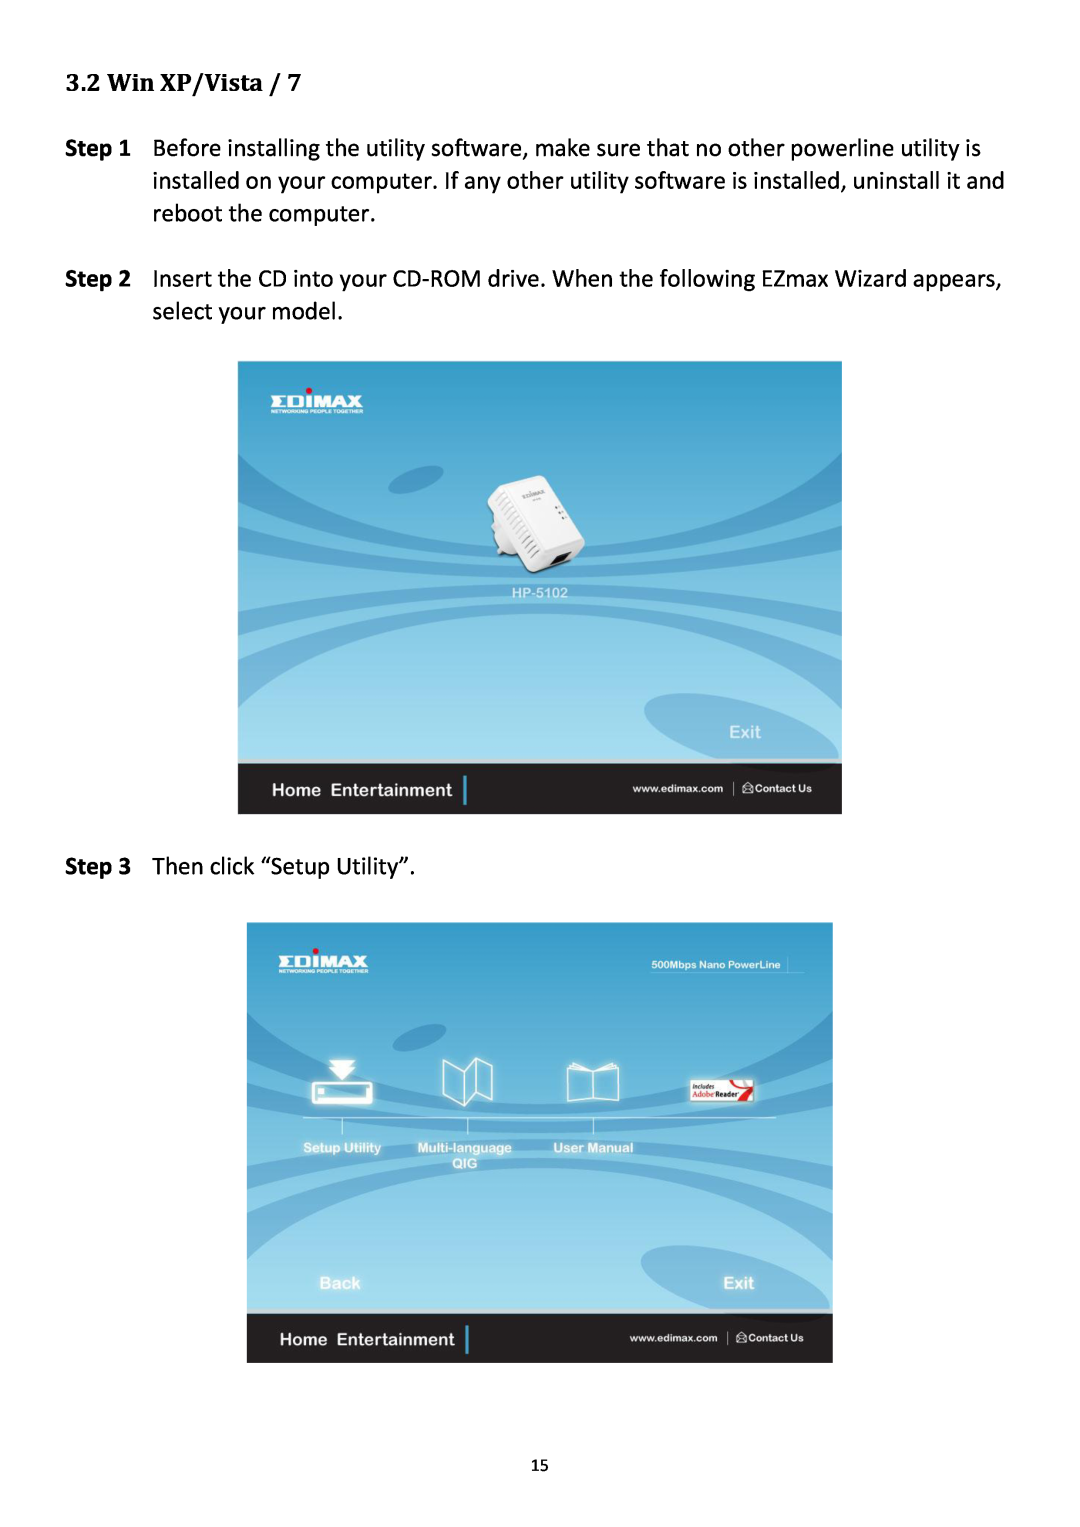 Edimax Technology HP-5102 user manual Win XP/Vista 